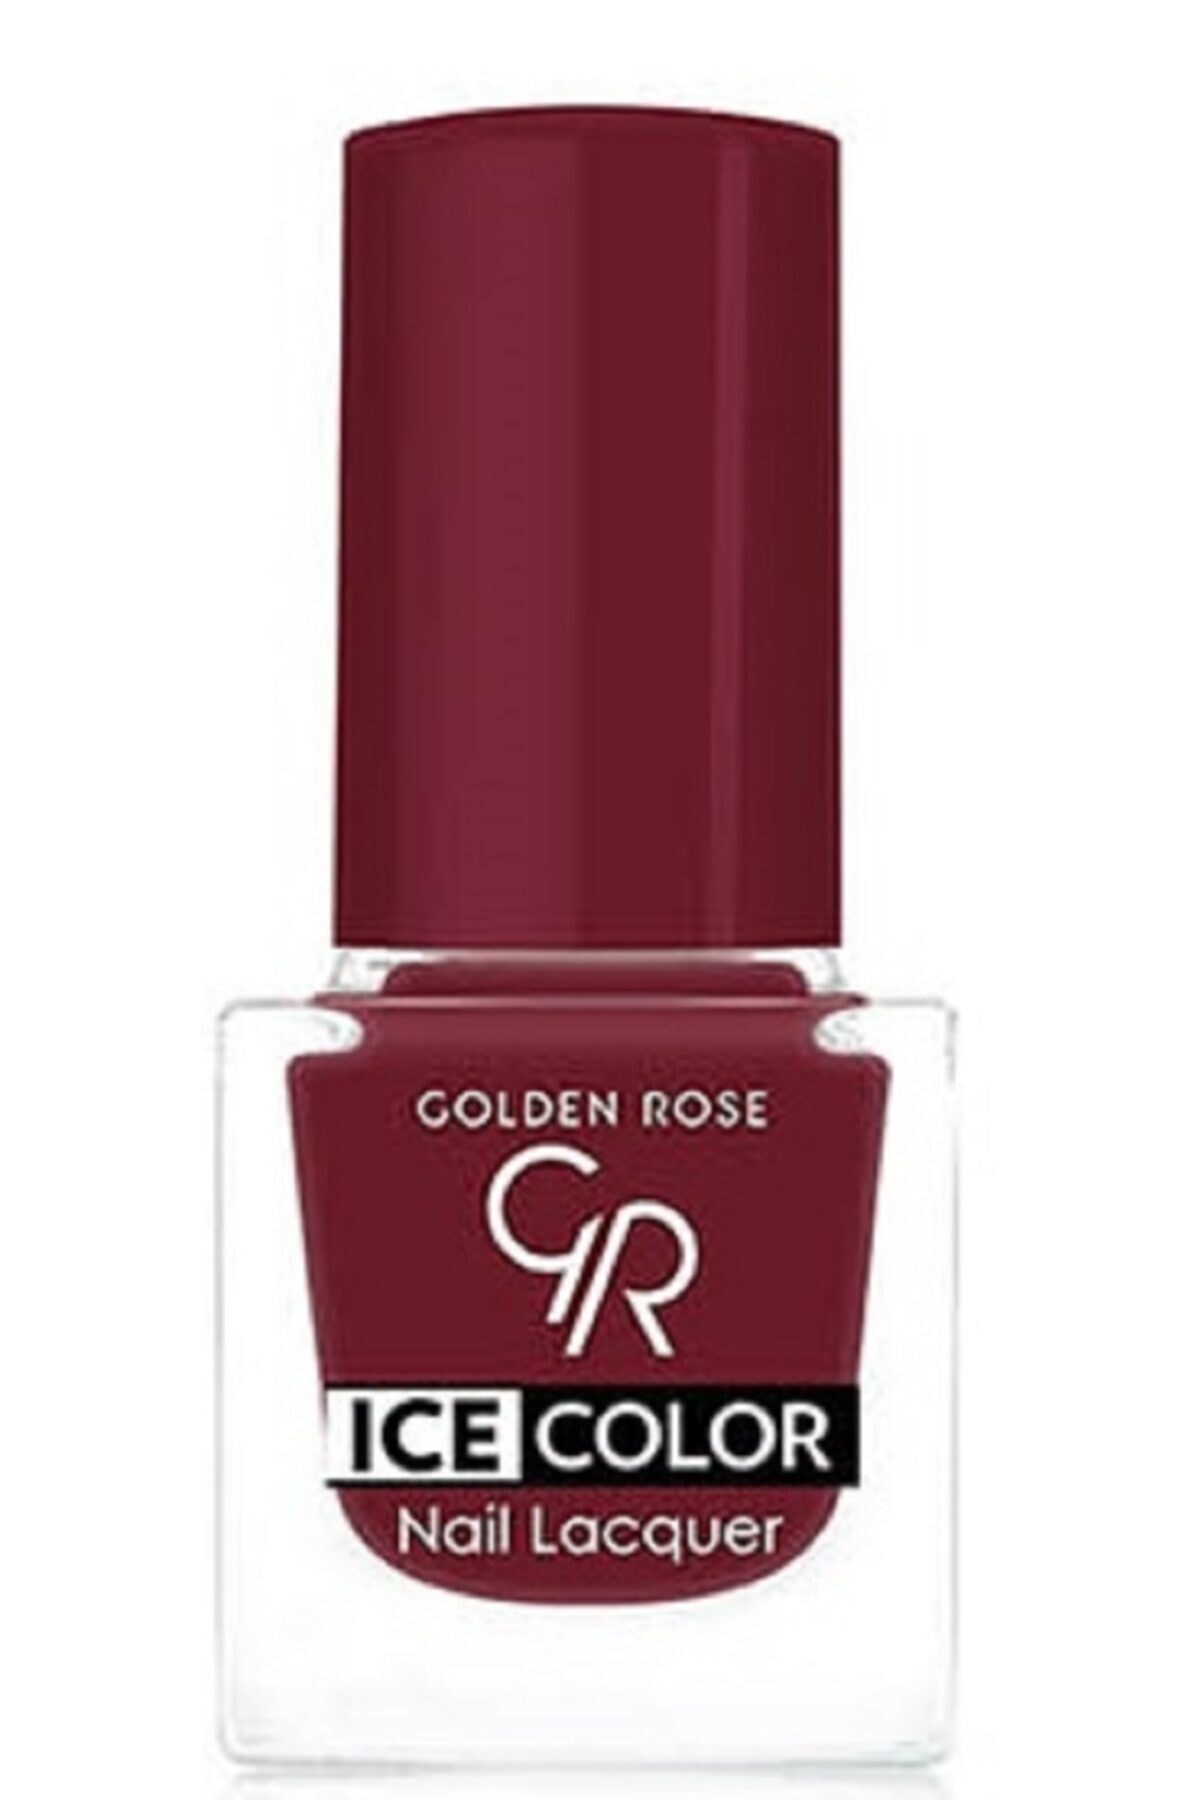 لاک ناخن یخی آیس چیک ICE شماره 181 رنگ سبز نفتی گلدن رز Golden Rose